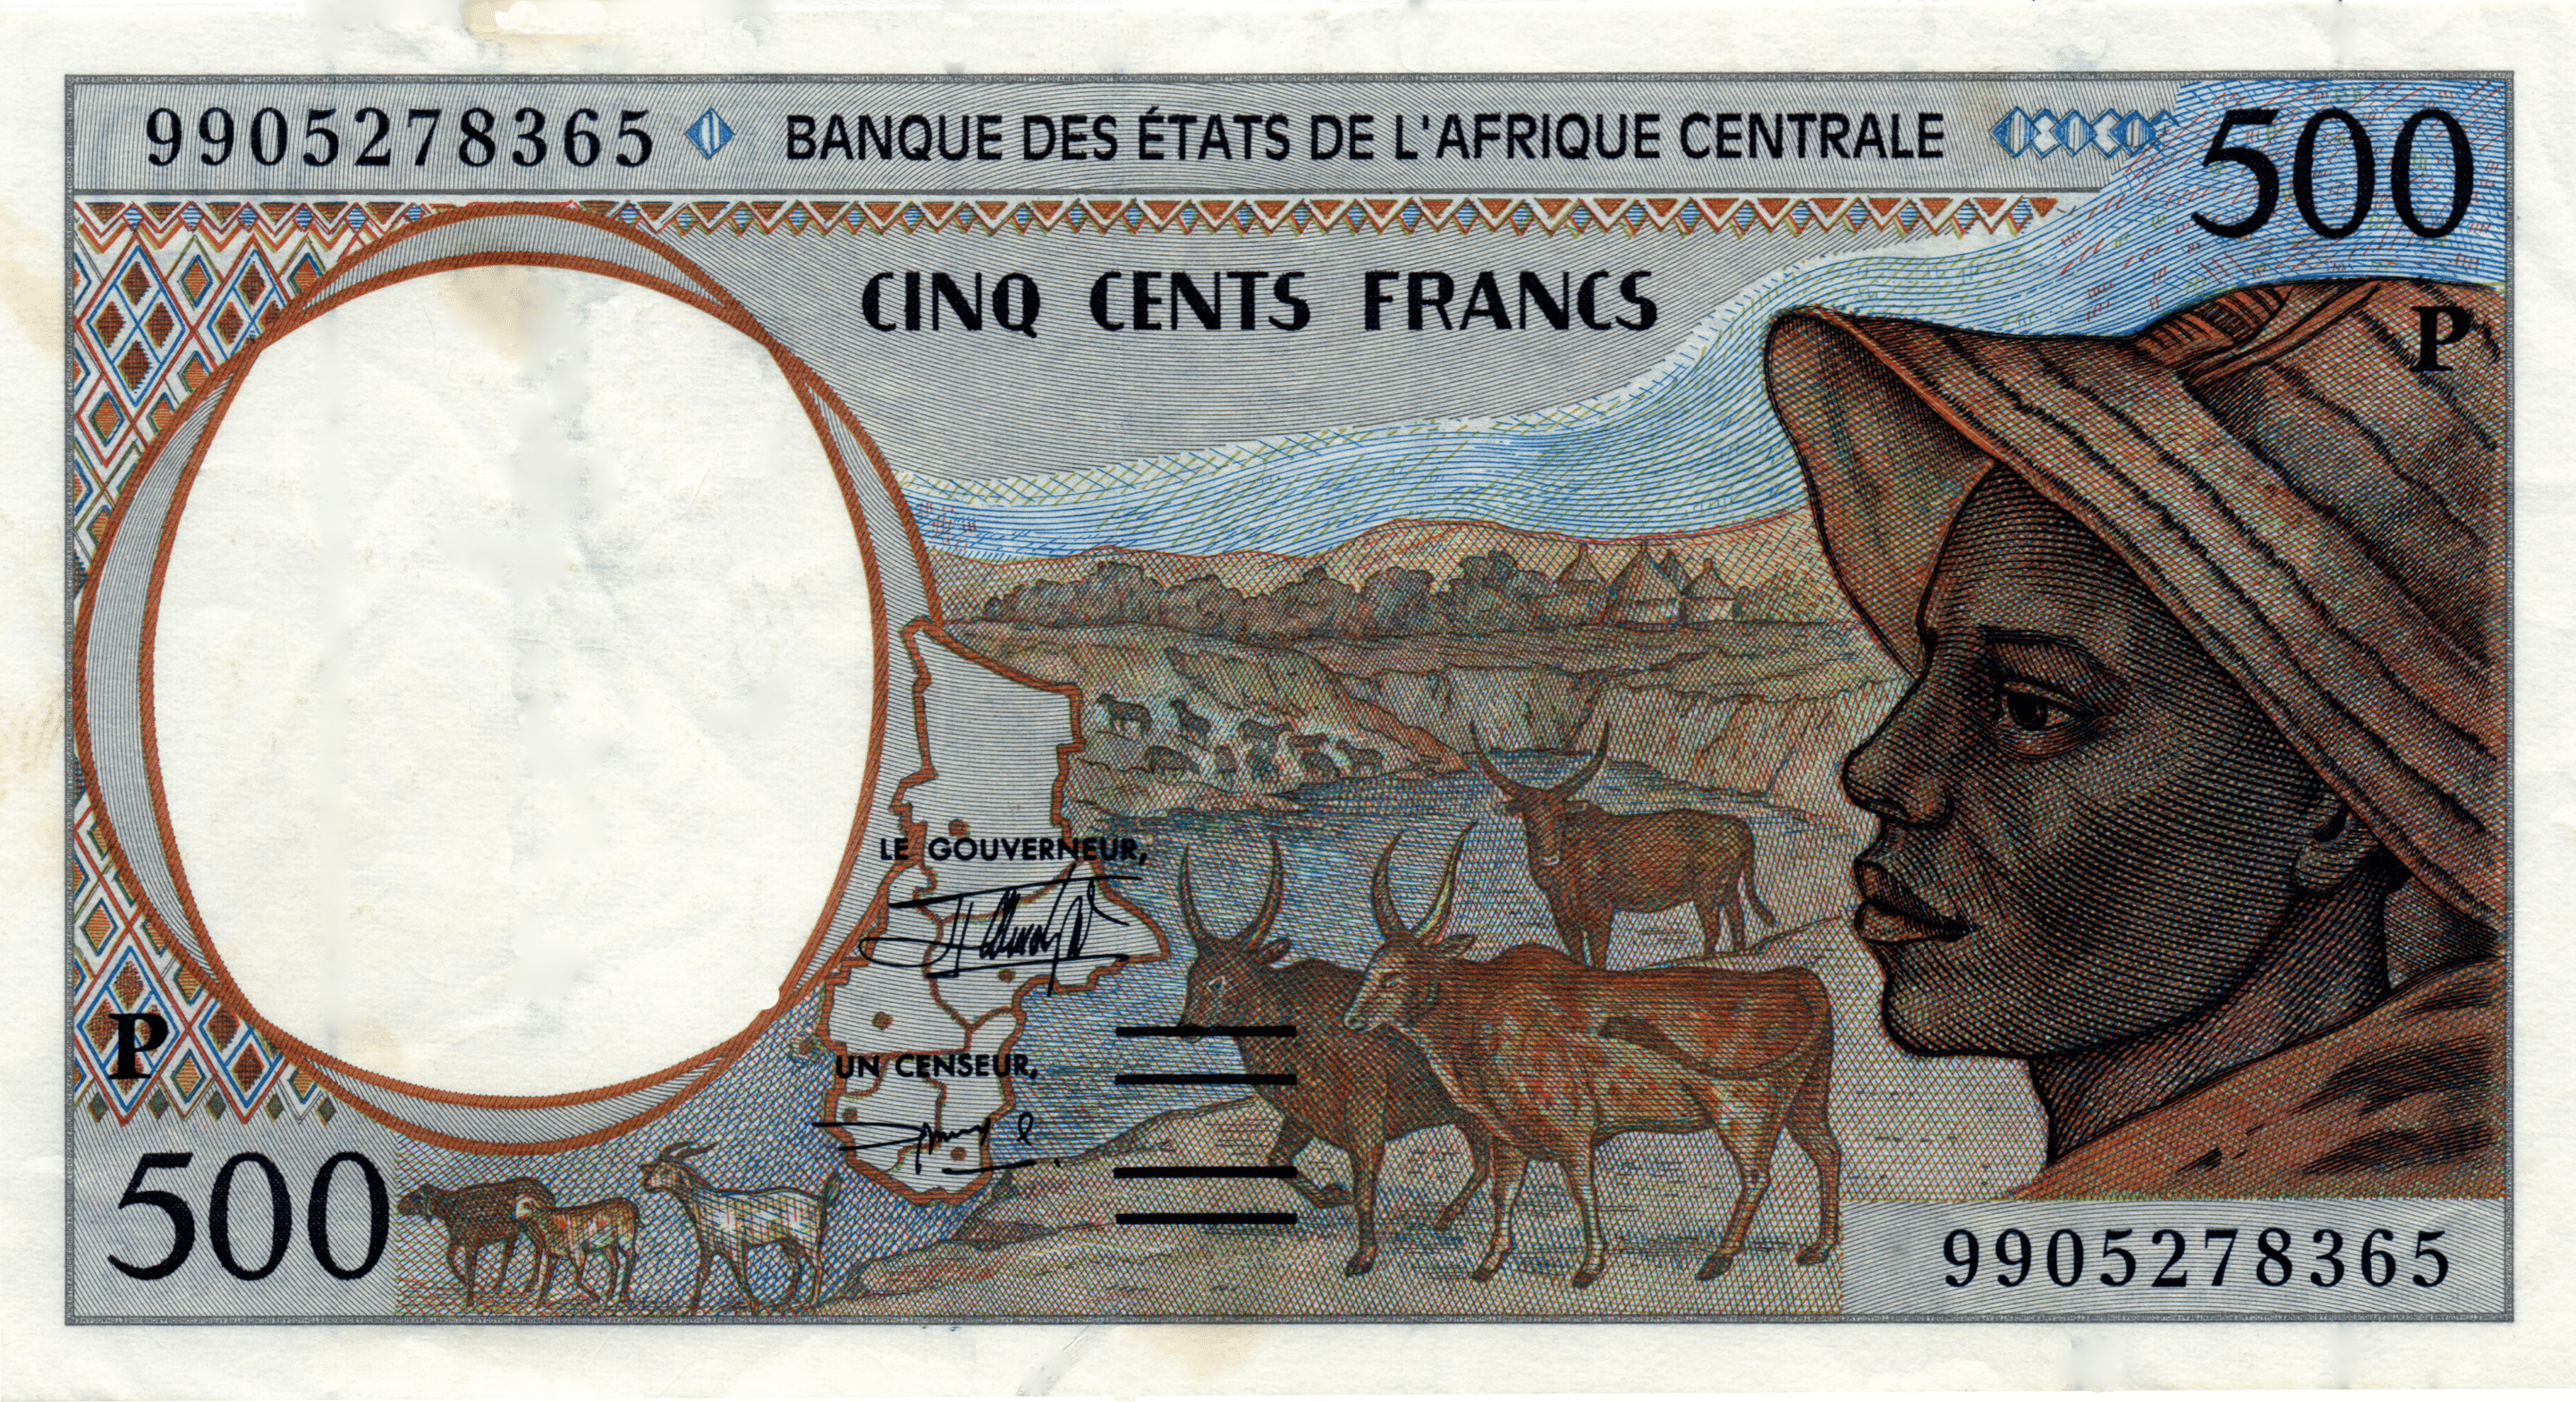 Billet de 500 francs CFA, émis de 1993 à 2002 par la BEAC. (c) Wikipédia